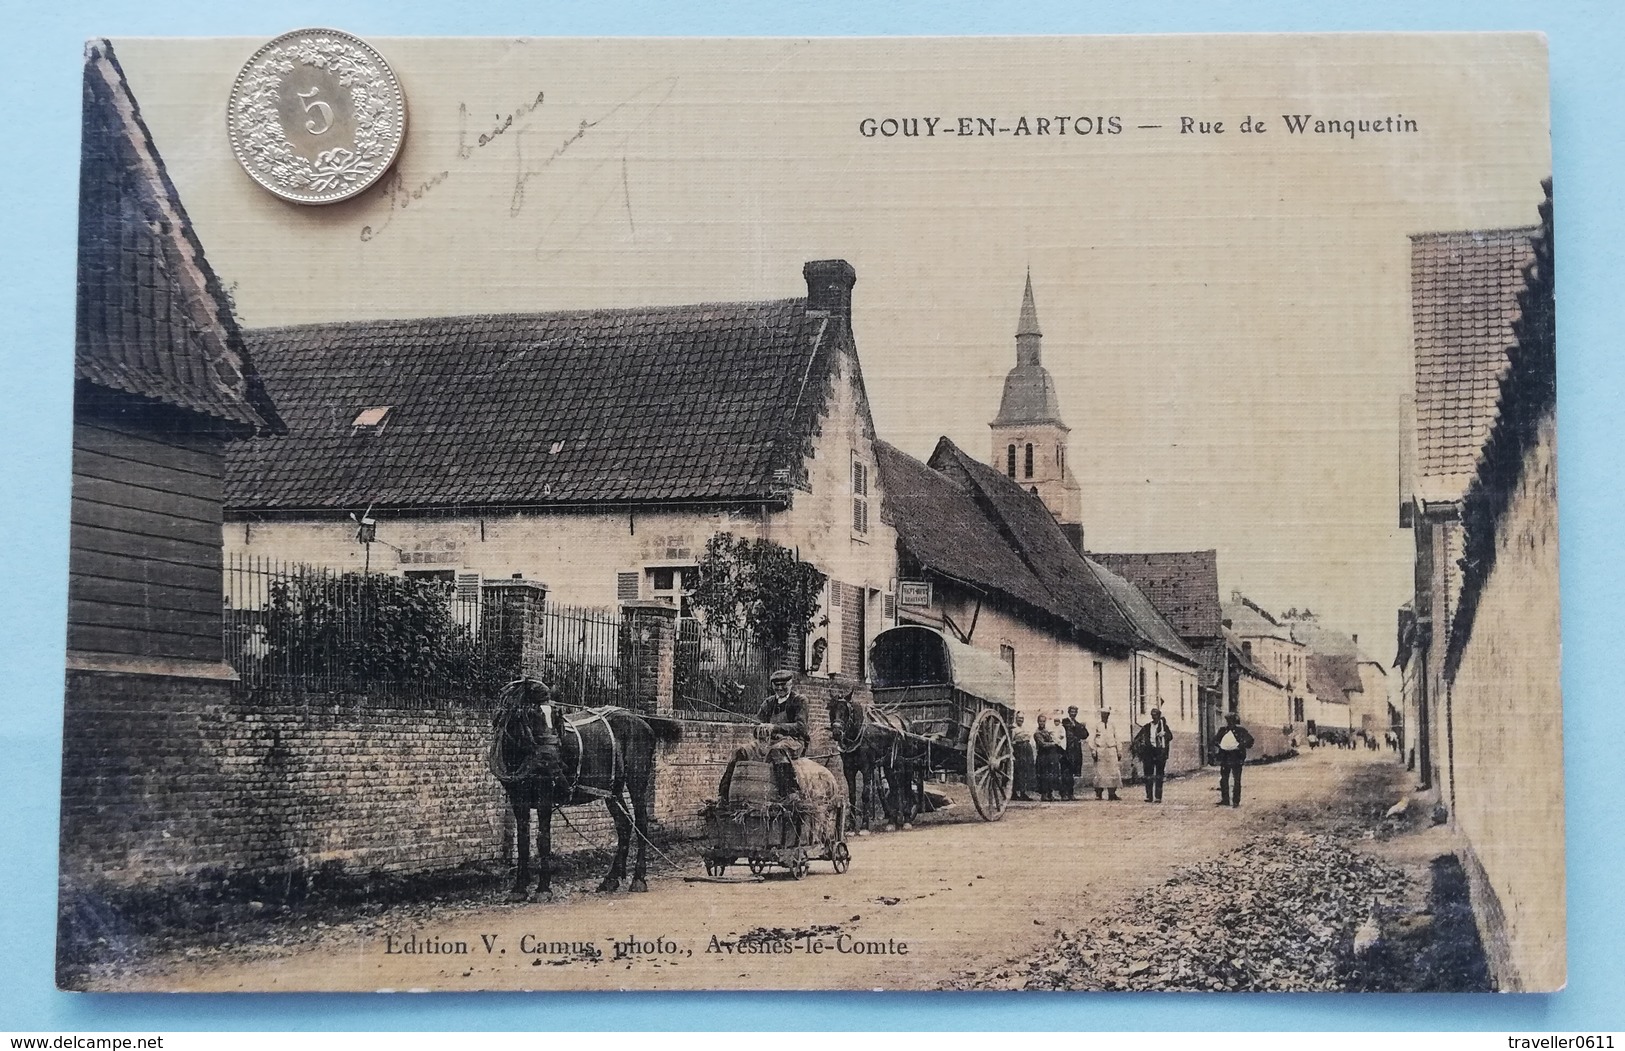 Gouy-en-Artois, Rue De Wanquetin, France, 1914 - Nord-Pas-de-Calais